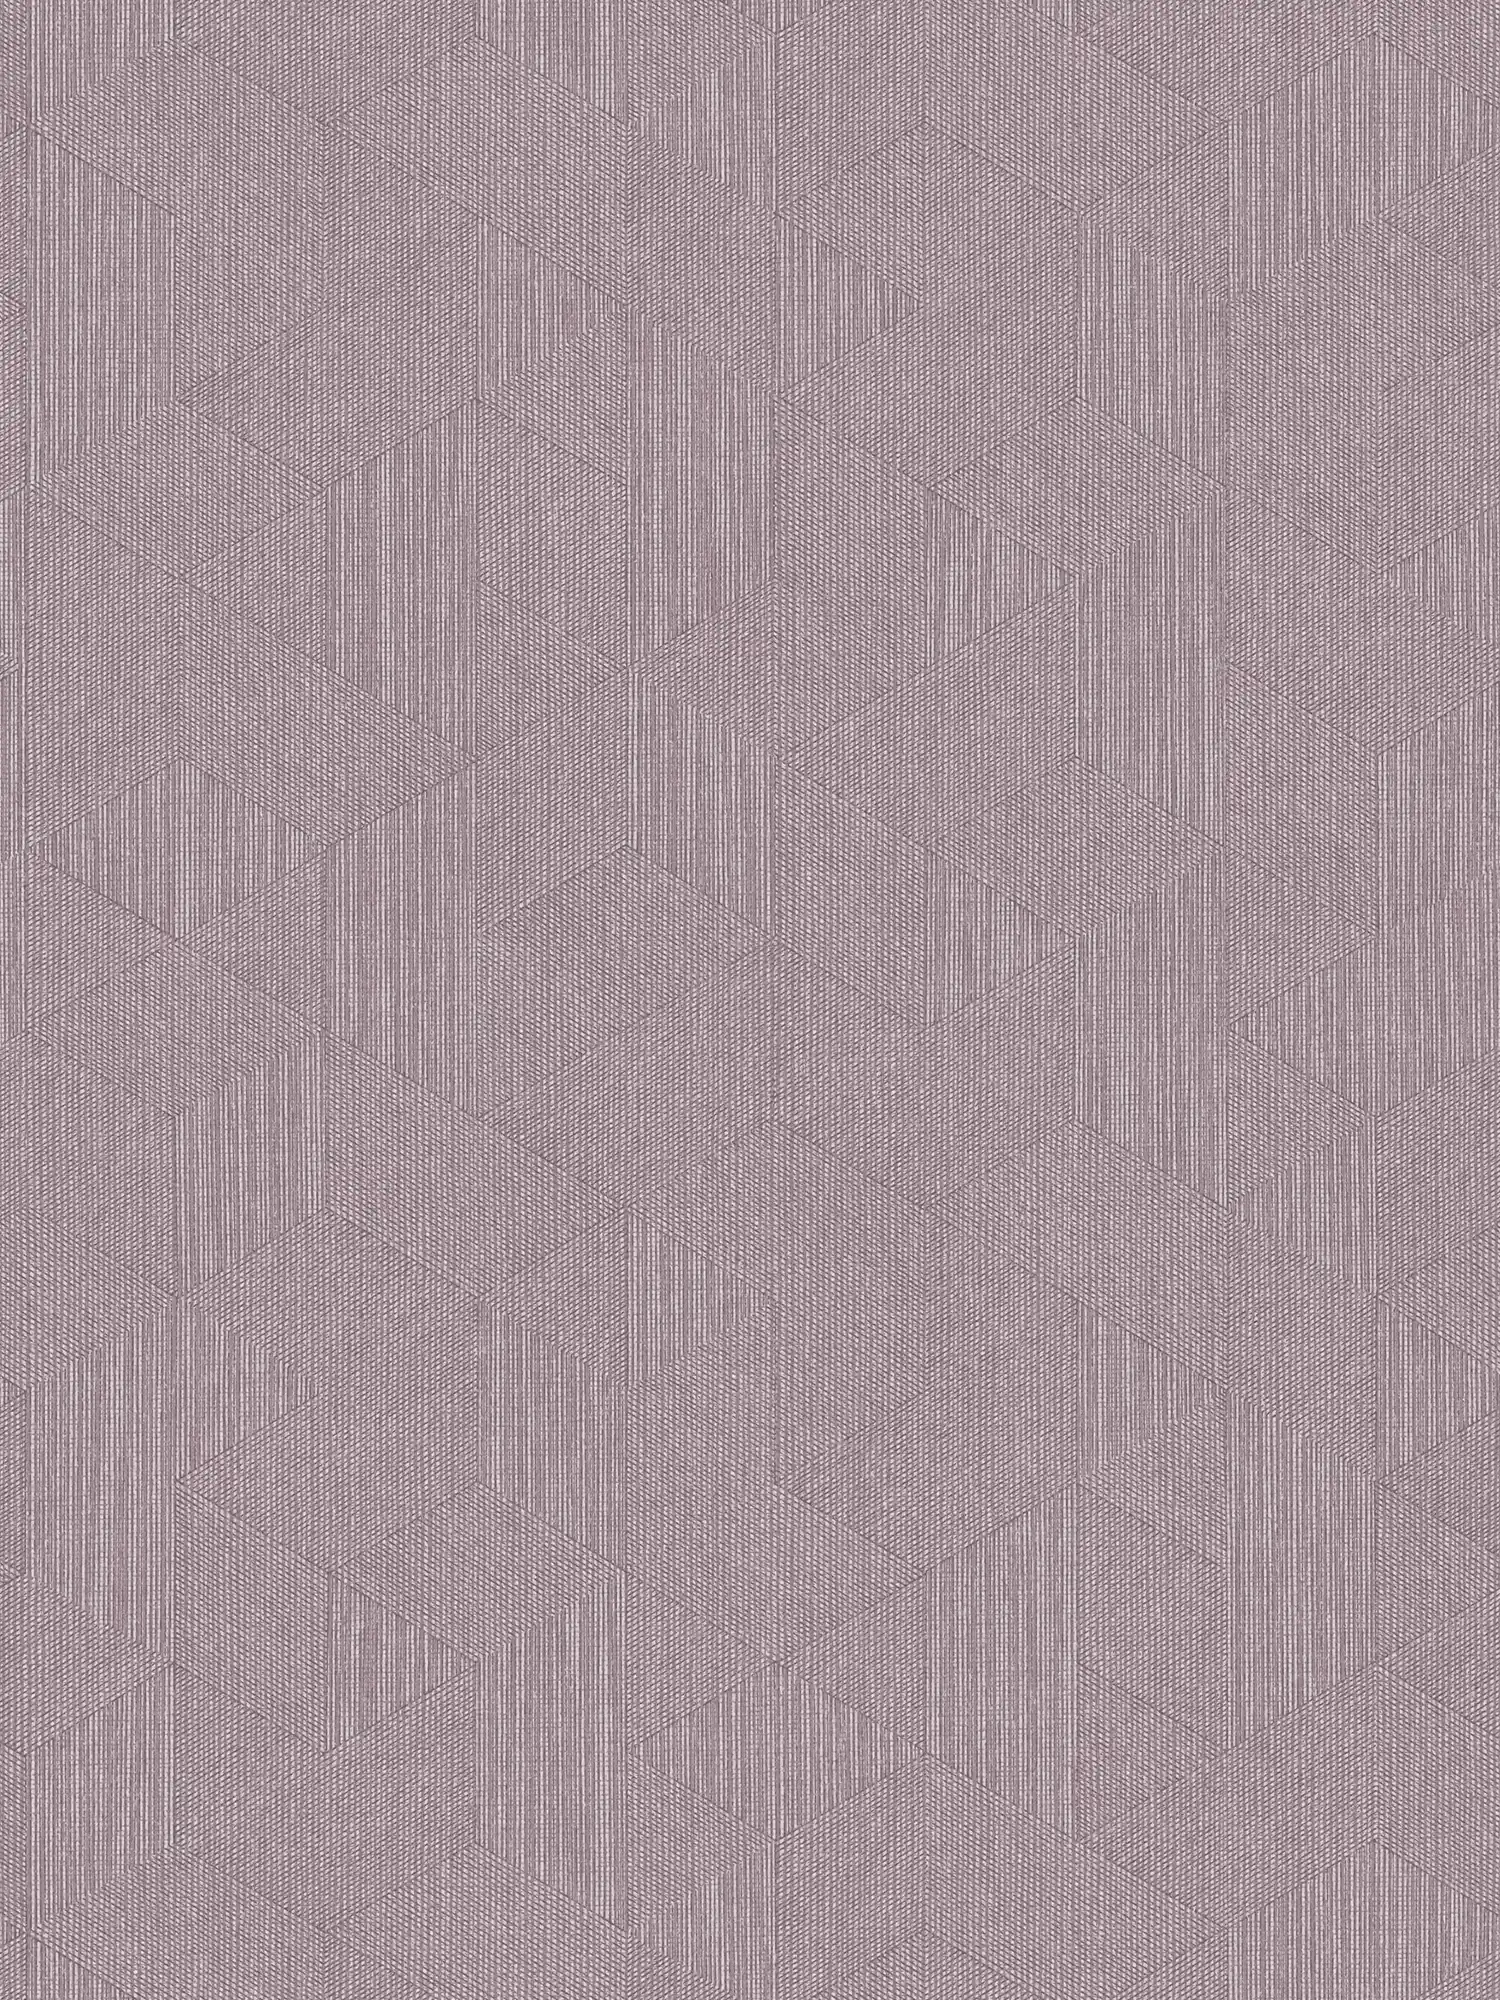 Behang paars met toon-op-toon patroon in grafische stijl - paars, grijs
